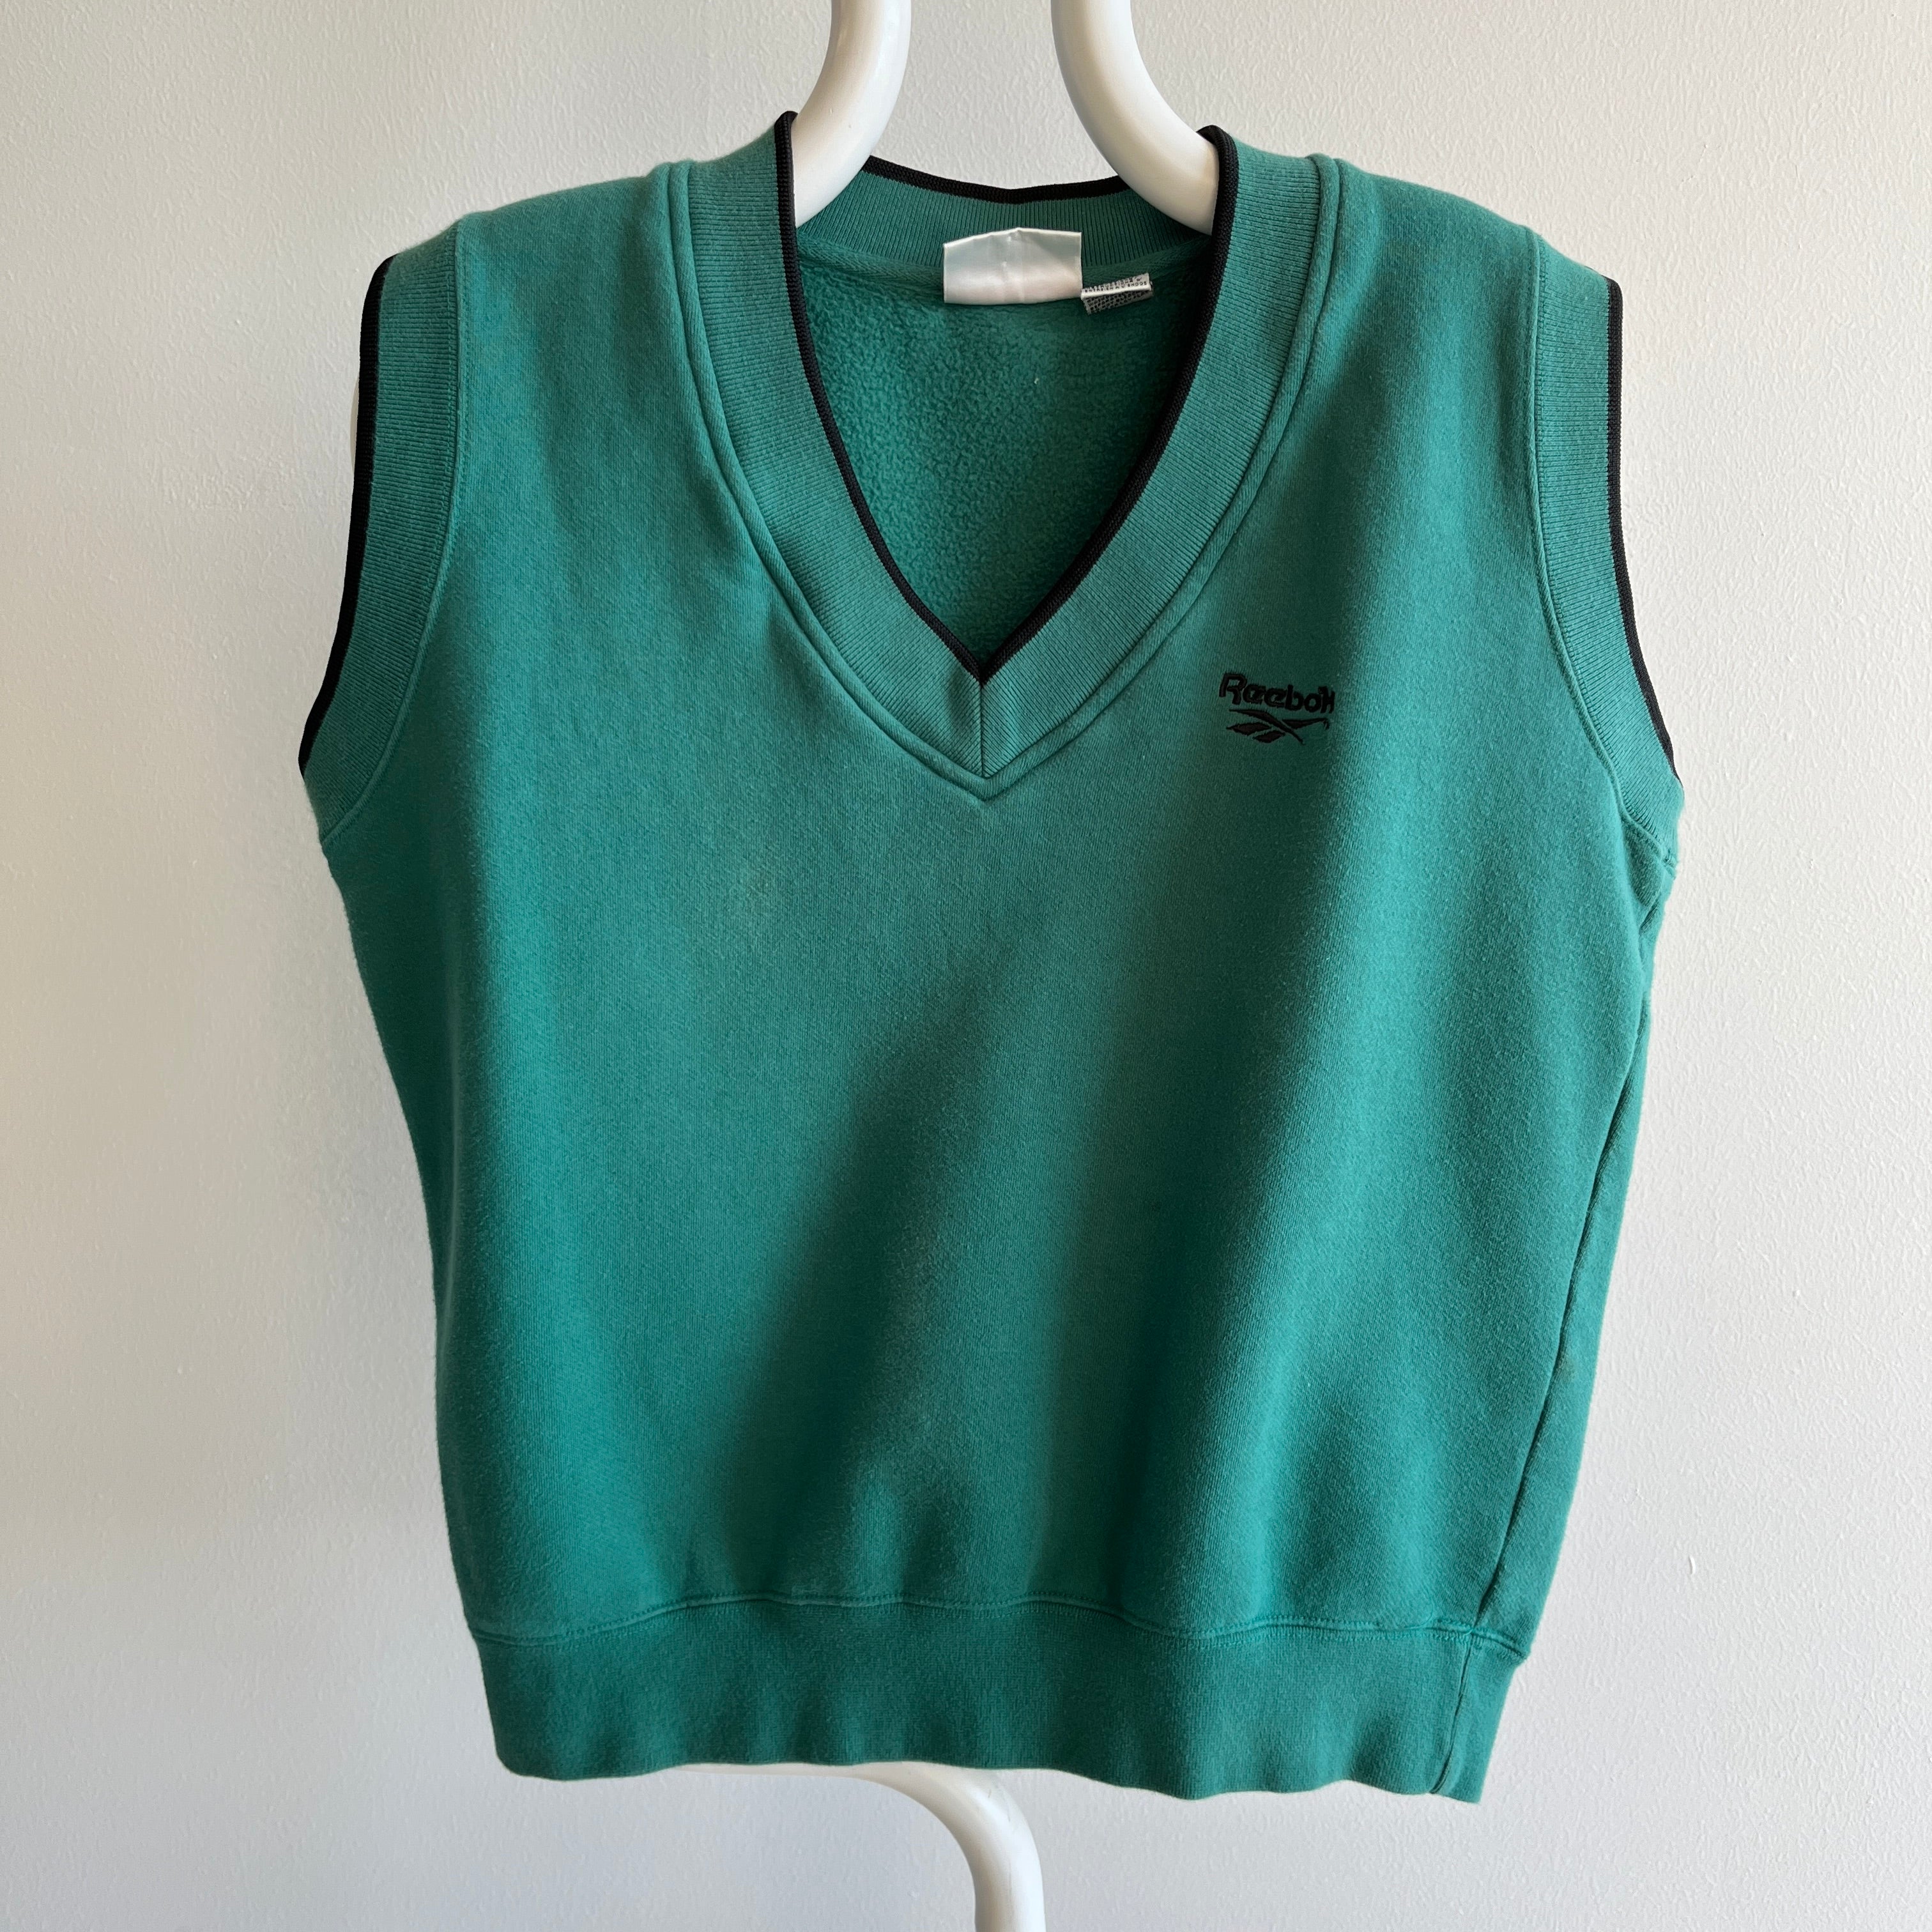 1980s Reebok Golf Sweatshirt Vest